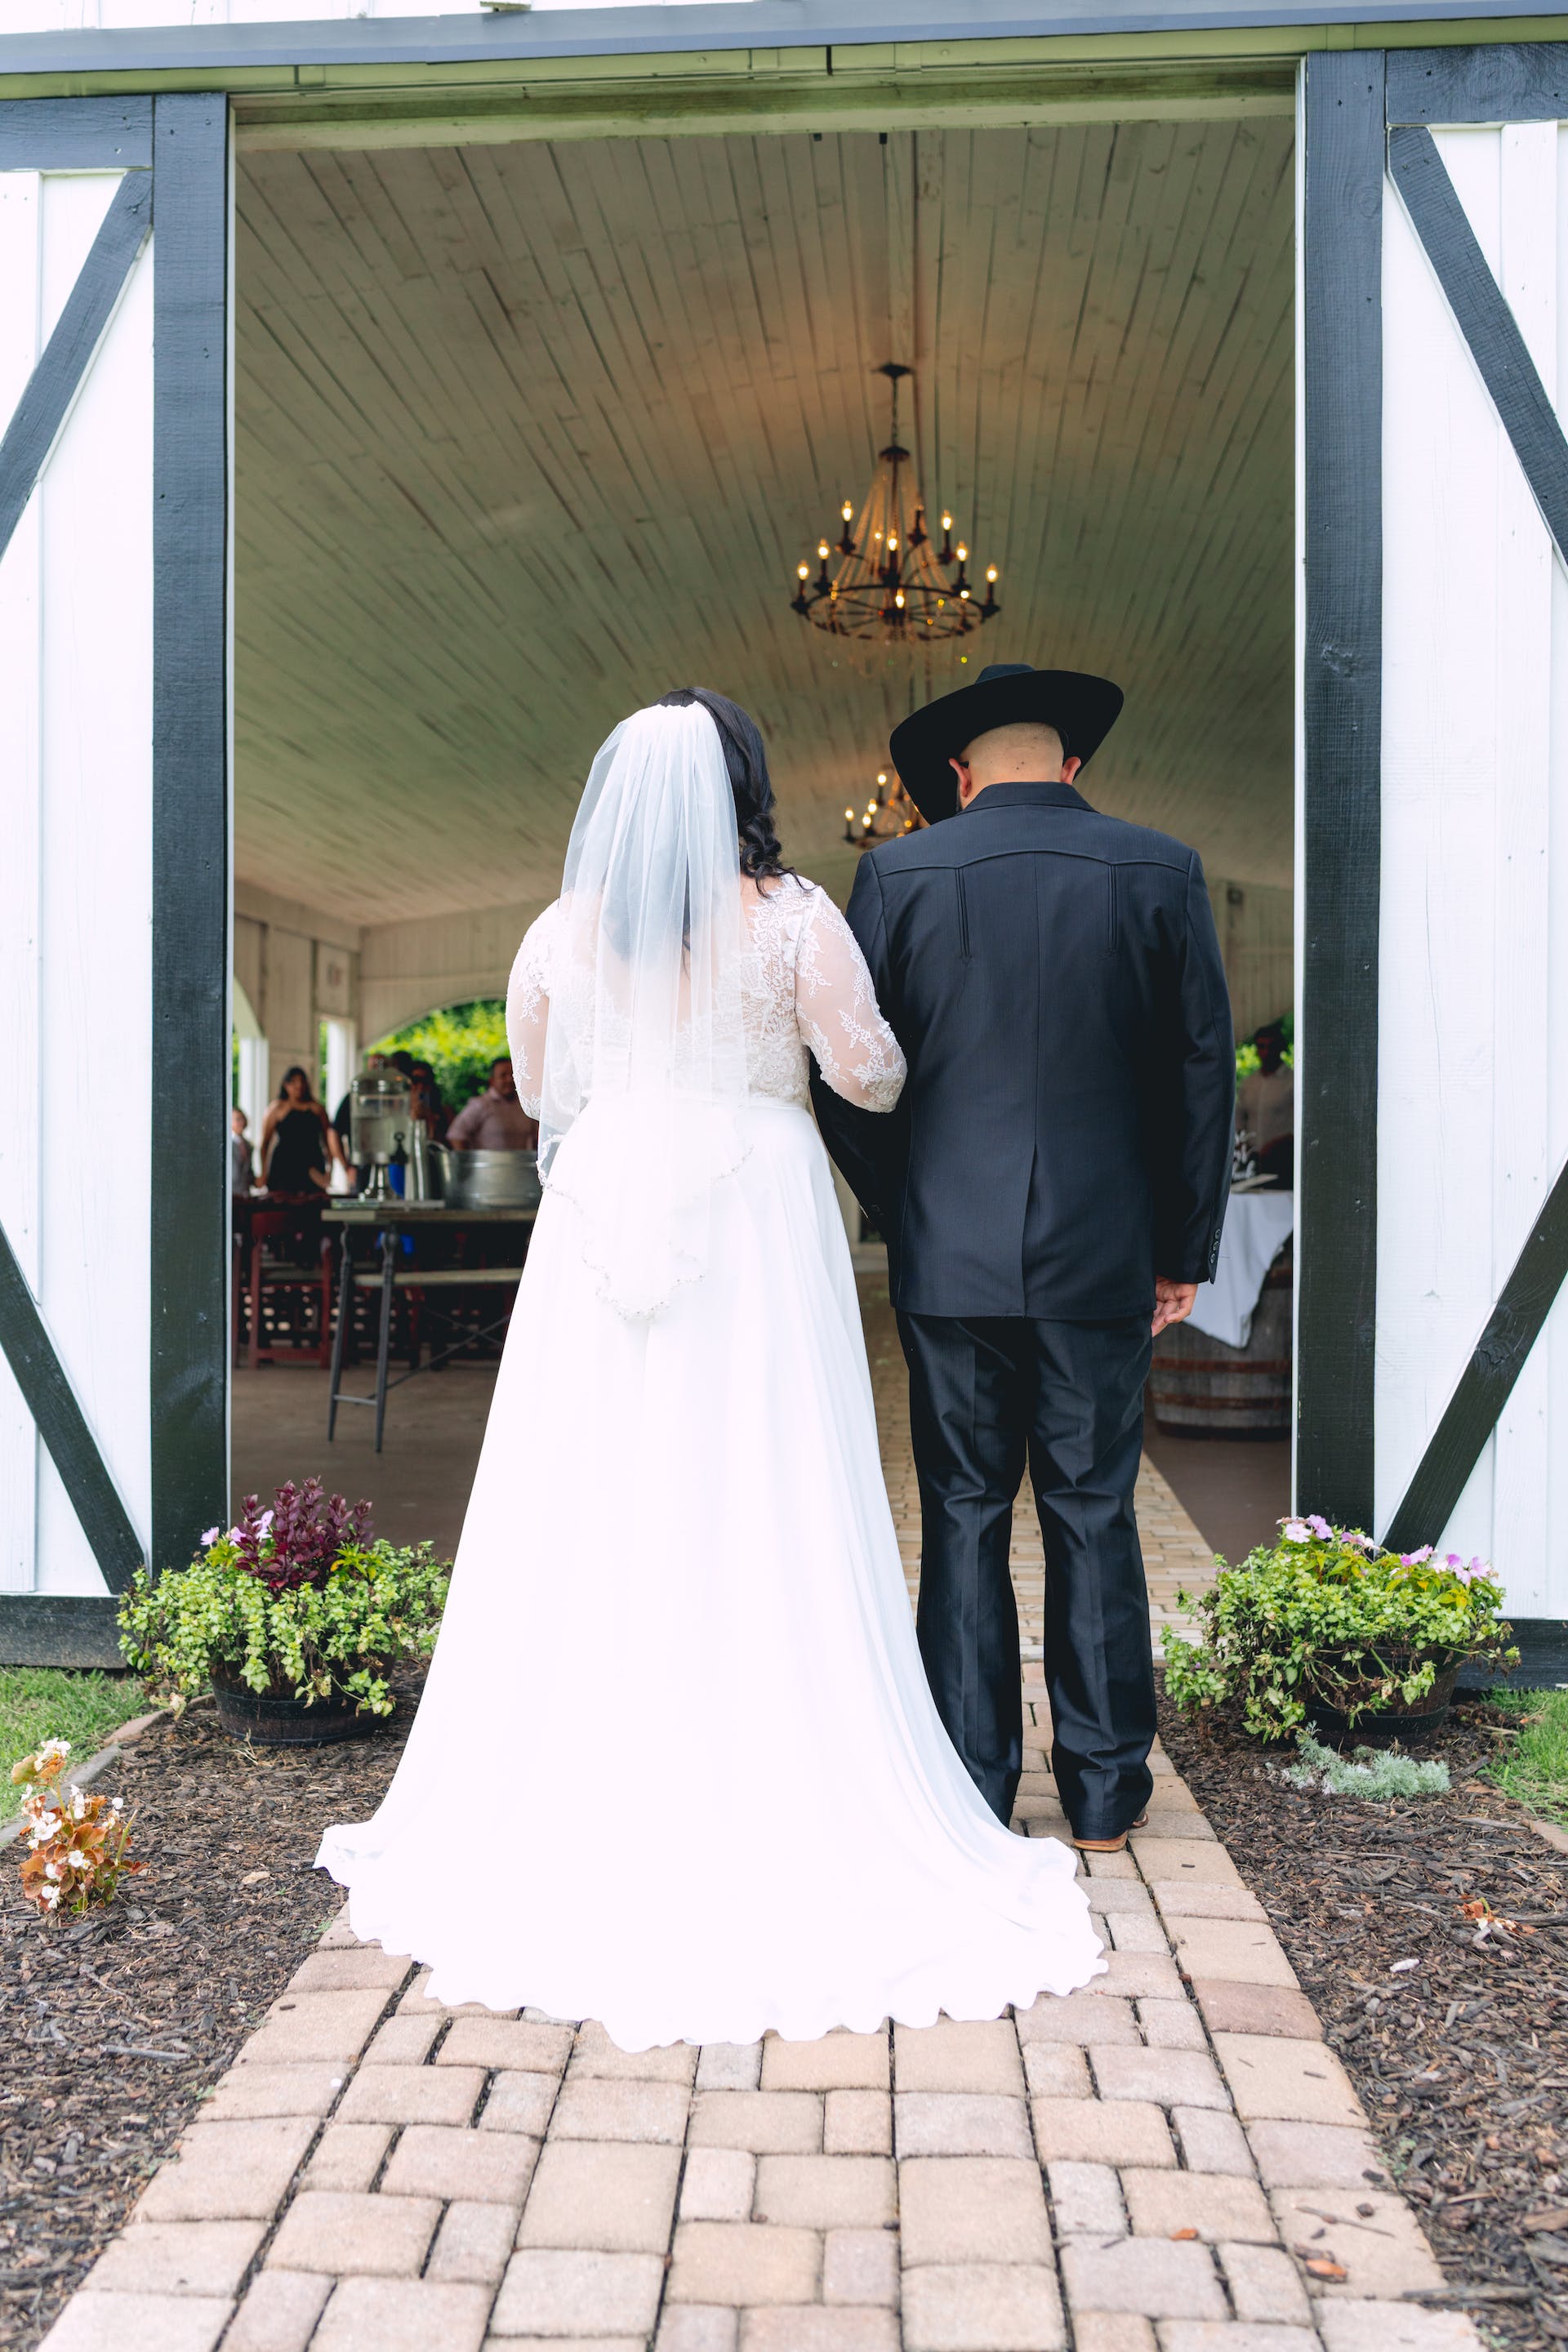 Eine Braut, die mit einem Mann zum Altar schreitet | Quelle: Pexels